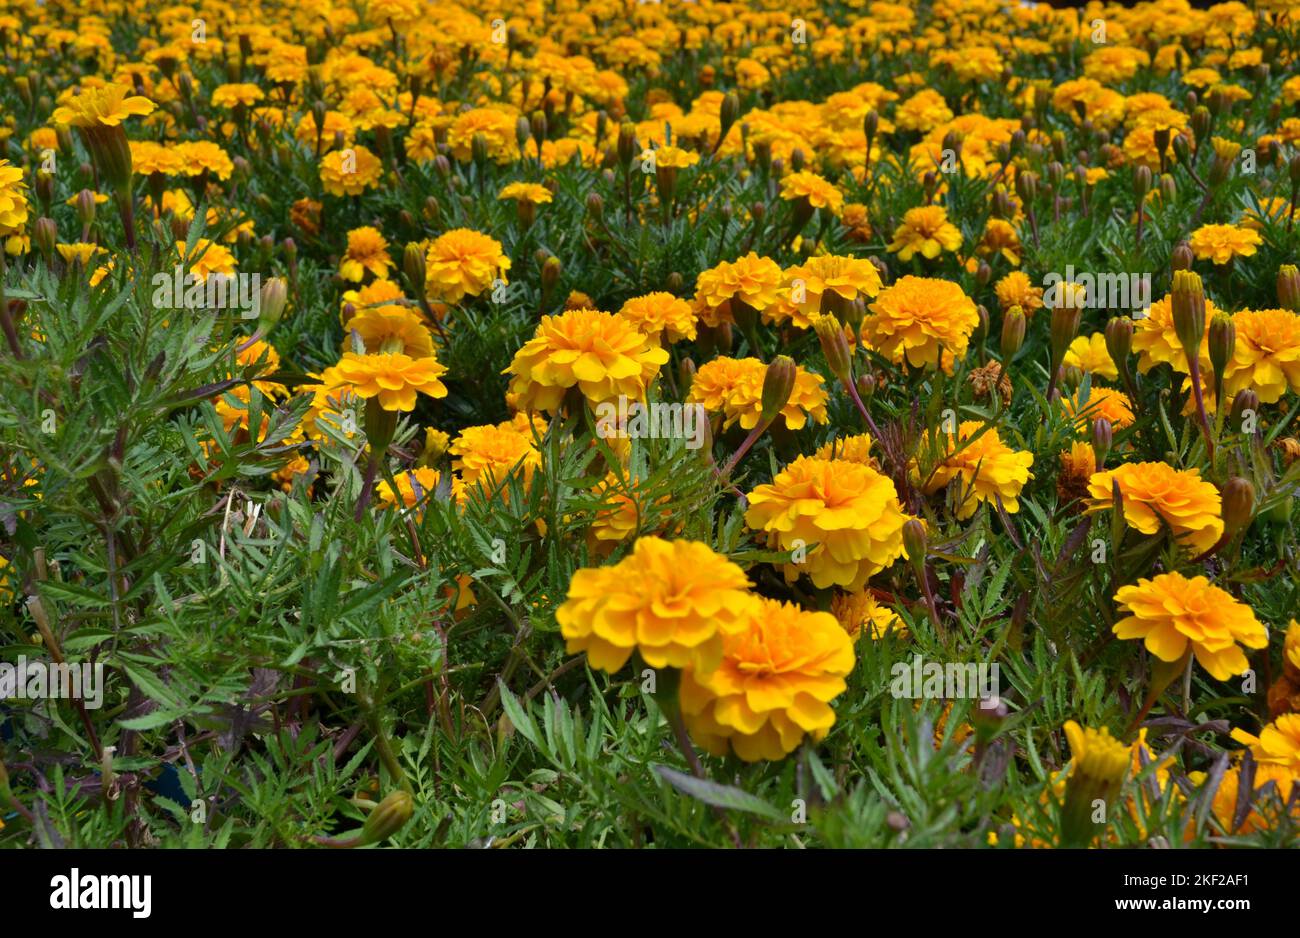 Pelouse de fleurs de marigold jaune dans le jardin.têtes de fleurs de marigold doré et jaune sur fond de feuilles vertes. Croissance facile. Fleur lumineuse Banque D'Images